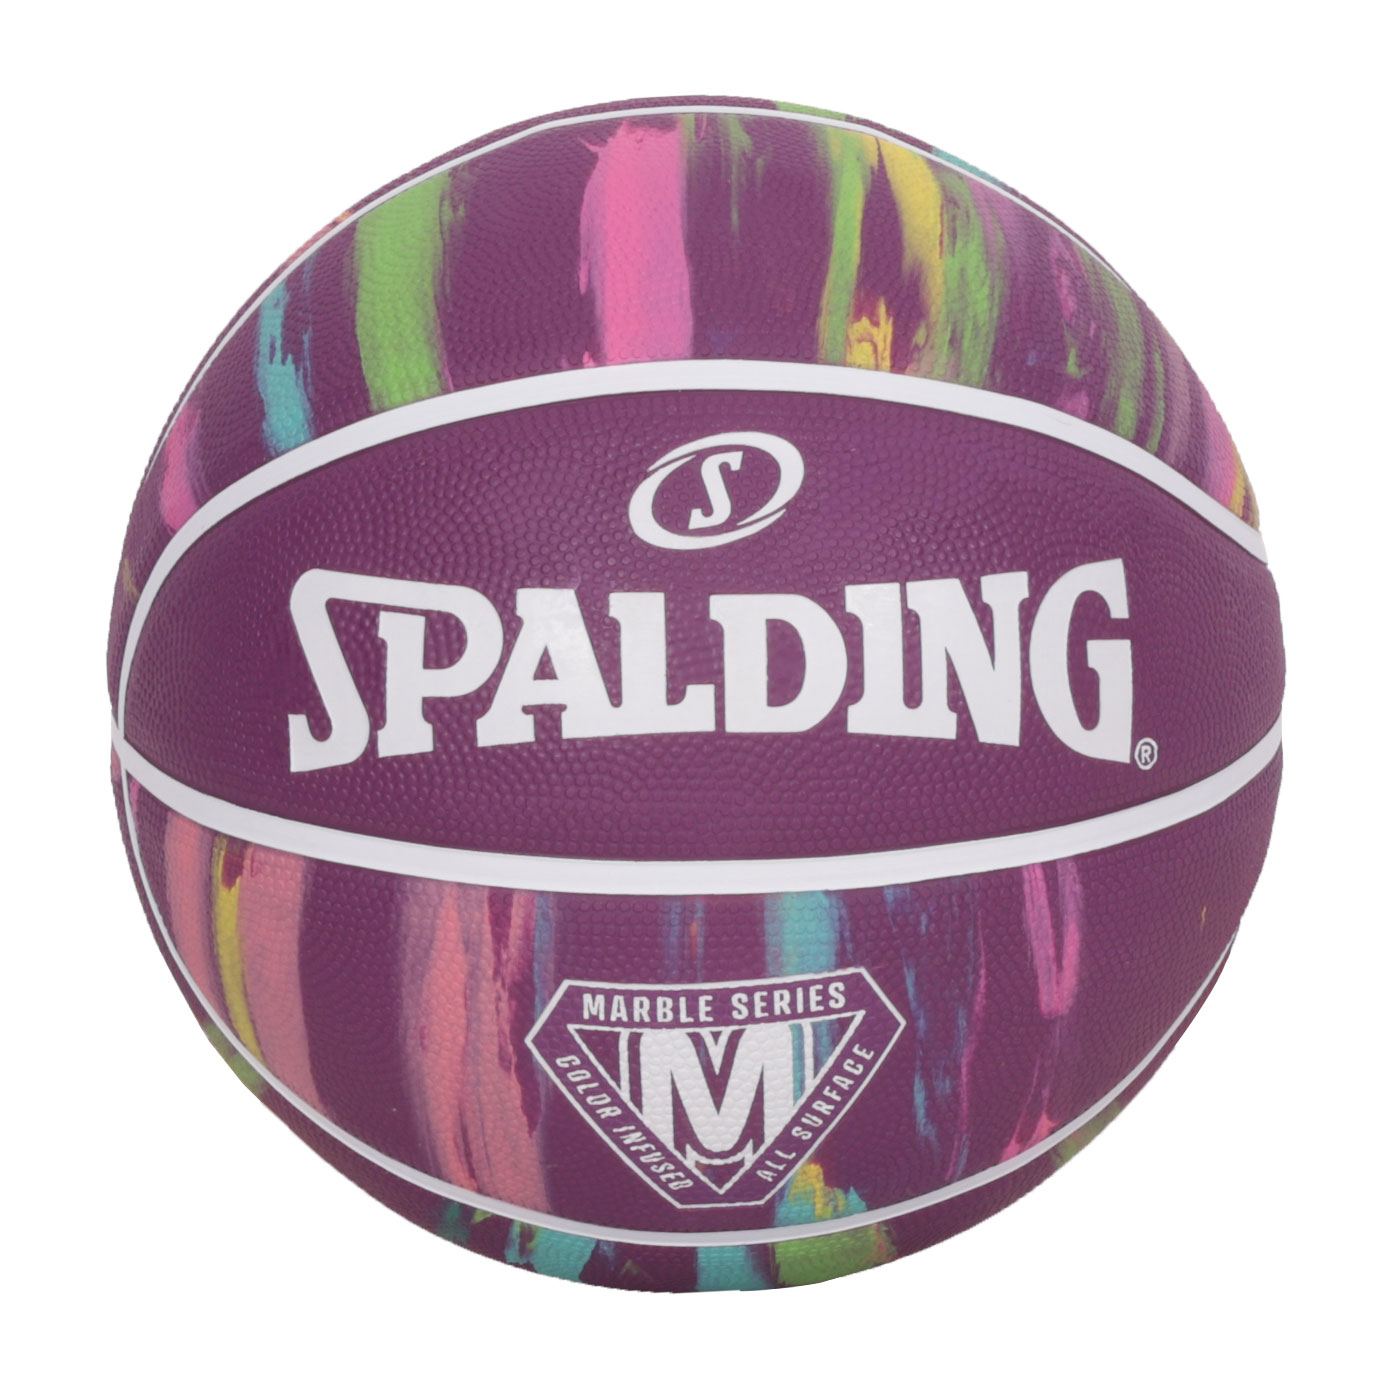 SPALDING 大理石系列紫彩#7橡膠籃球#40654  SPA84403 - 深紫彩色